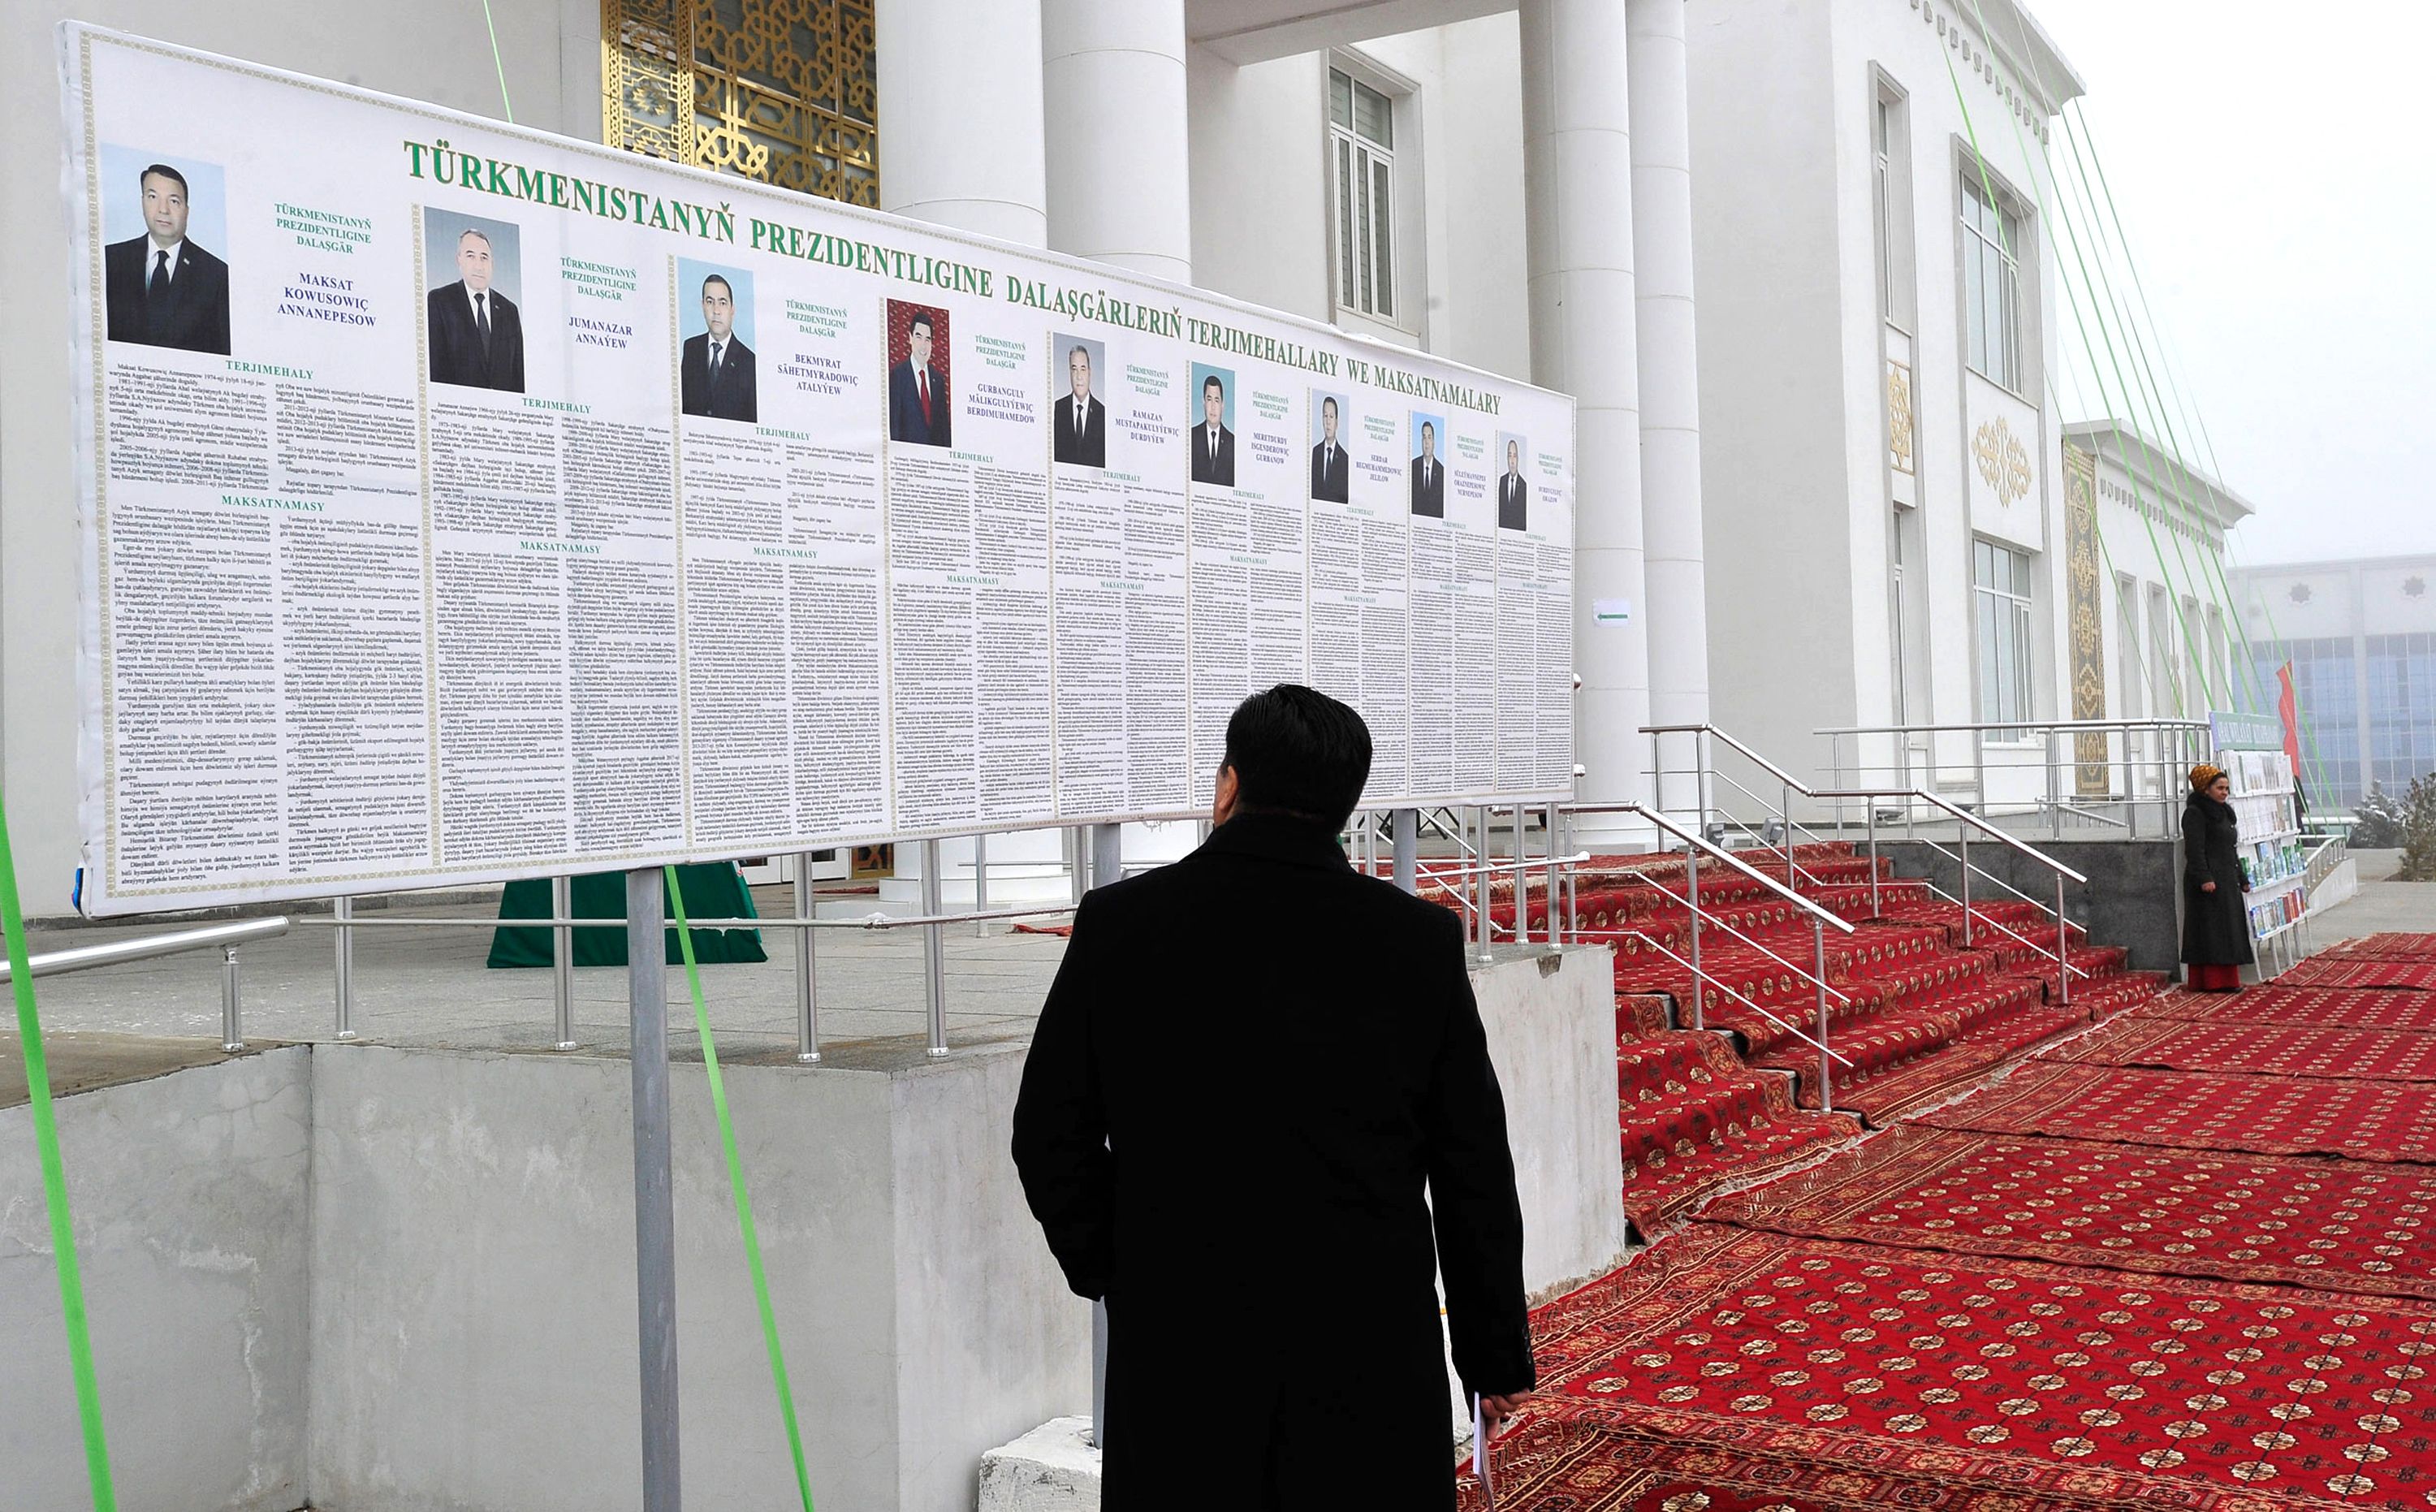 المشاركة فى انتخابات تركمانستان